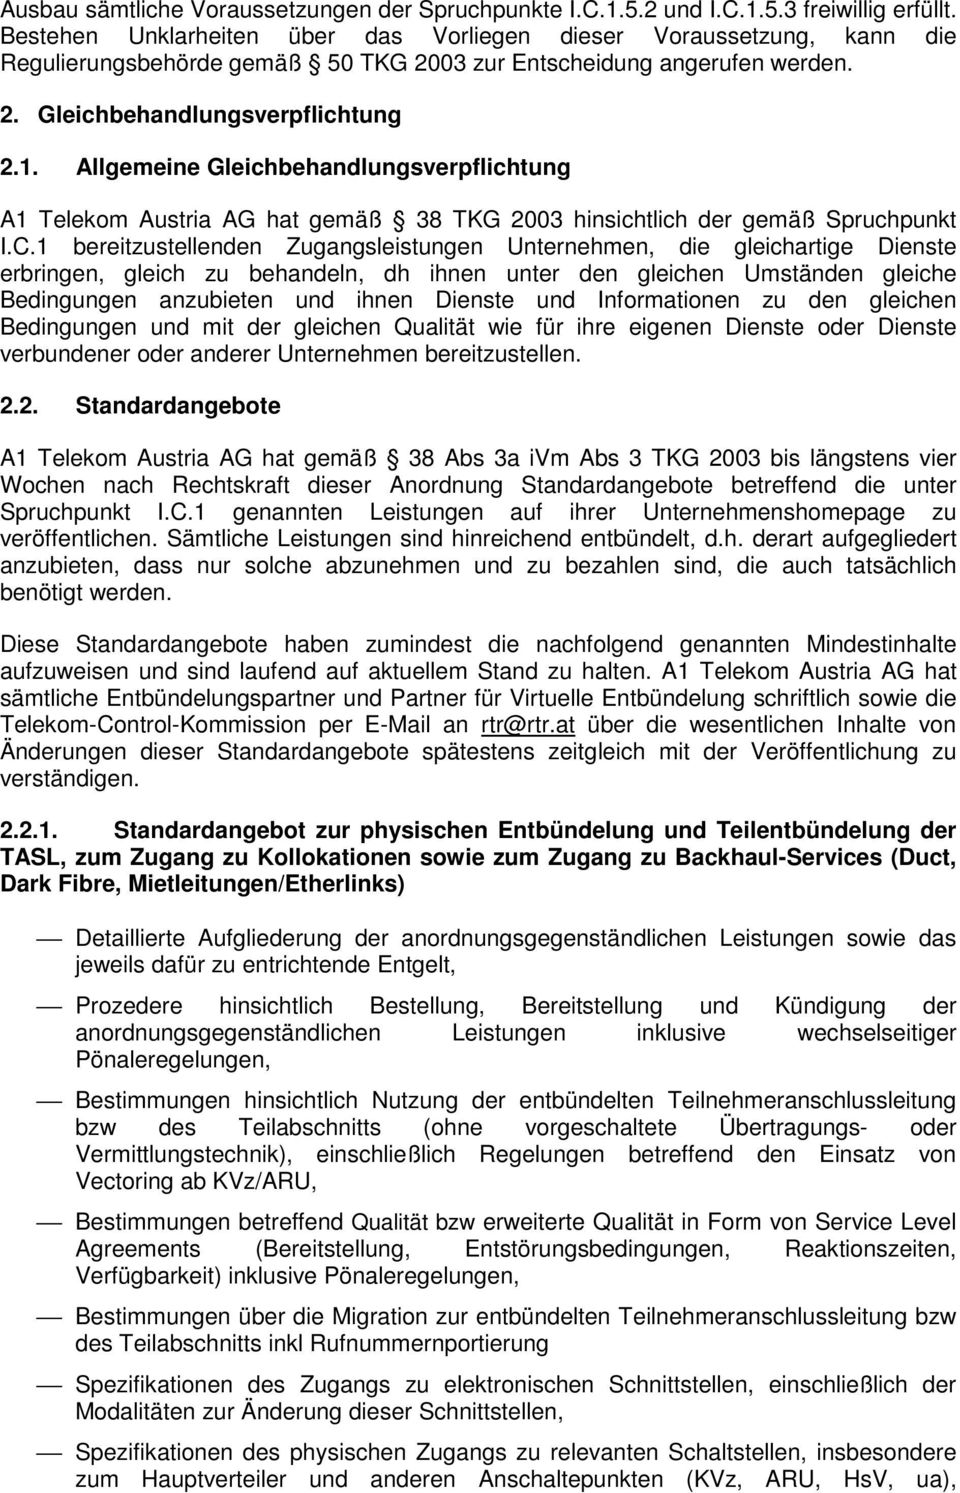 Allgemeine Gleichbehandlungsverpflichtung A1 Telekom Austria AG hat gemäß 38 TKG 2003 hinsichtlich der gemäß Spruchpunkt I.C.